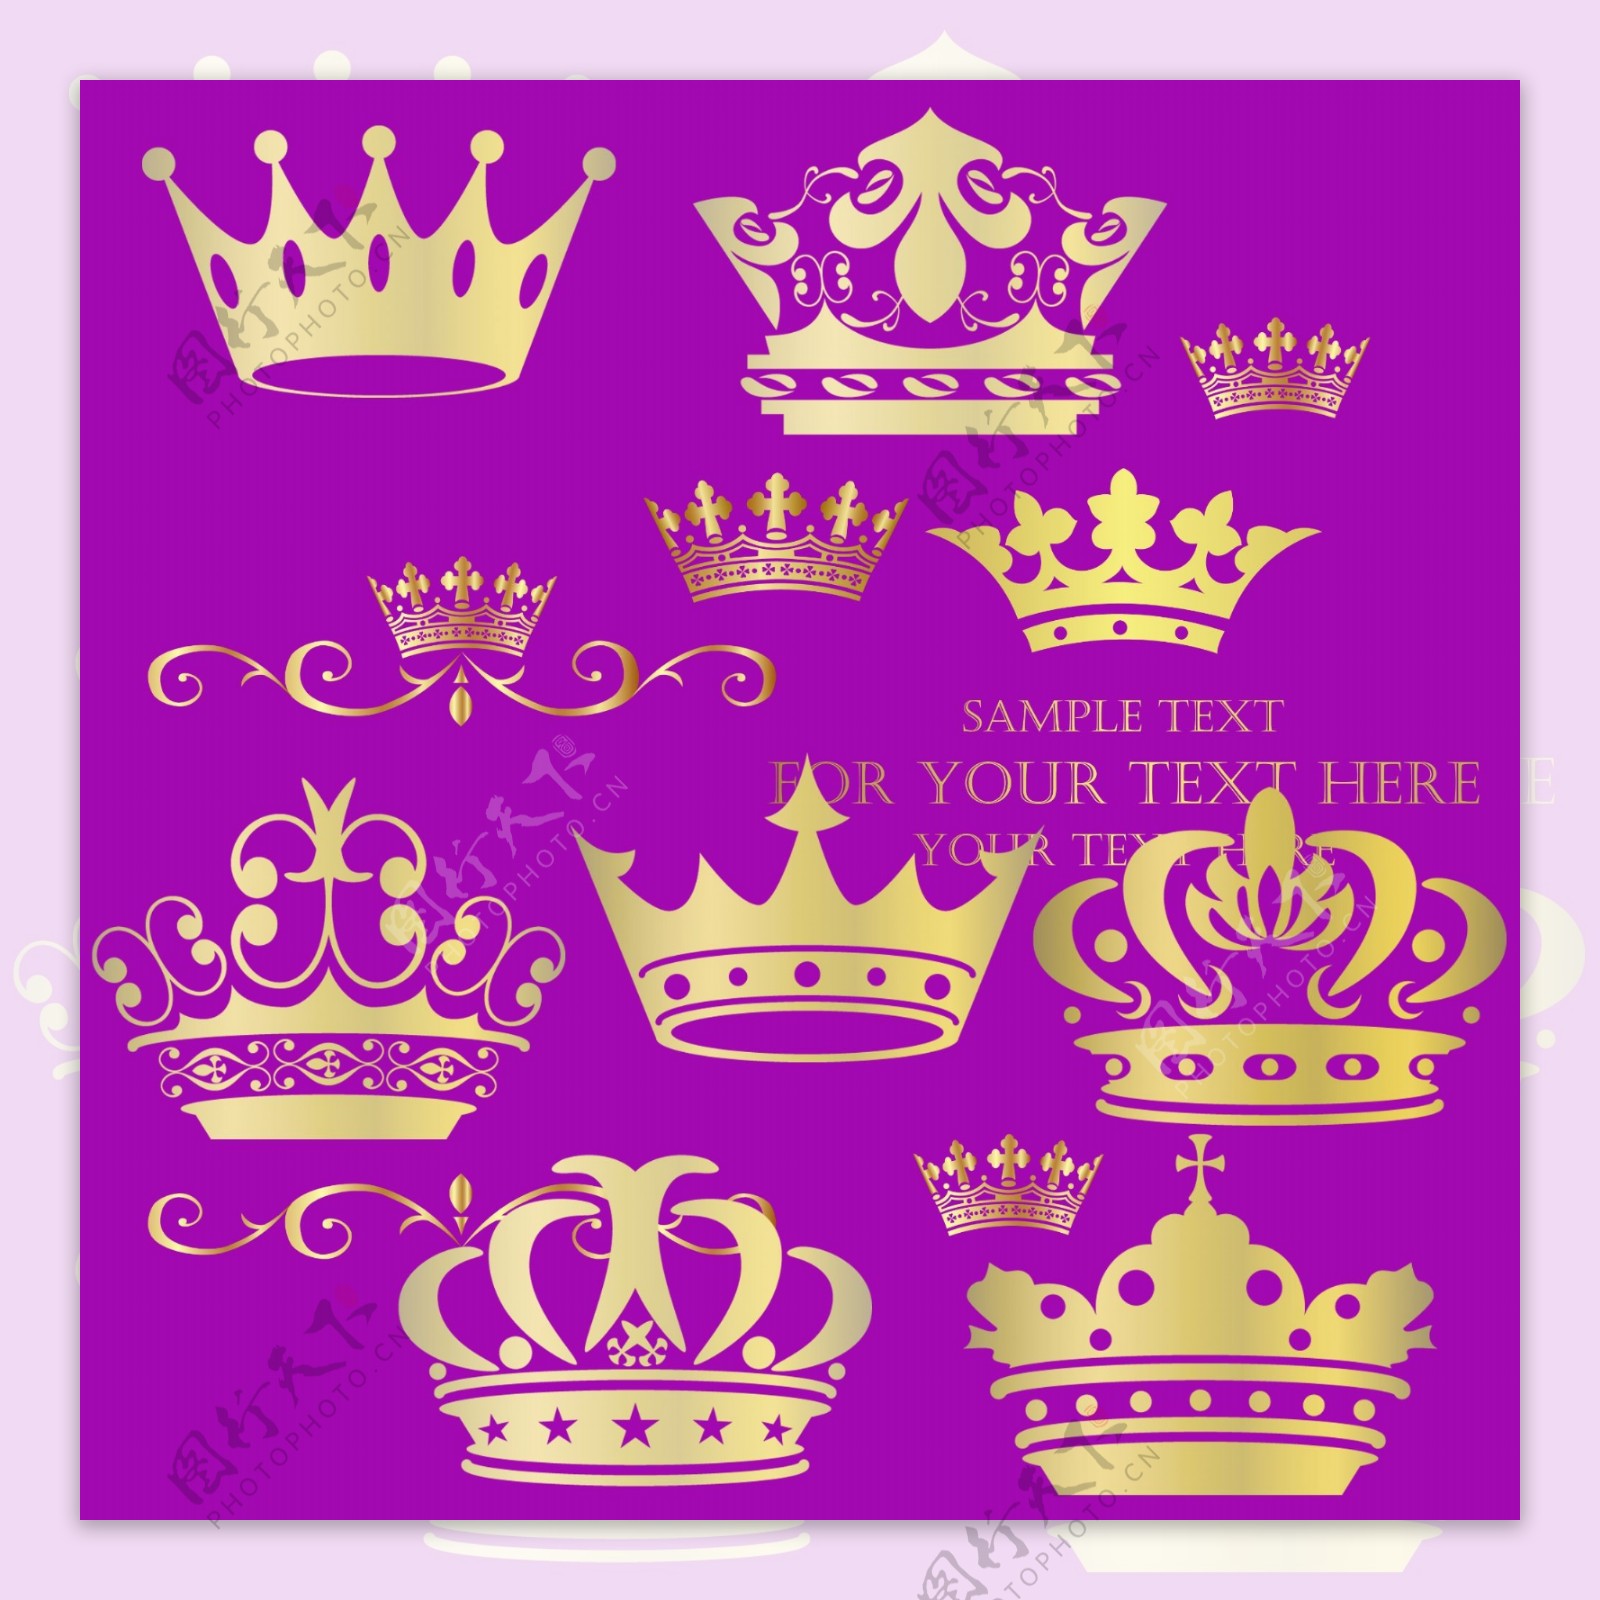 皇冠皇冠頭飾公主皇冠, 公主皇冠剪貼畫, 公主皇冠, 銀冠向量圖案素材免費下載，PNG，EPS和AI素材下載 - Pngtree